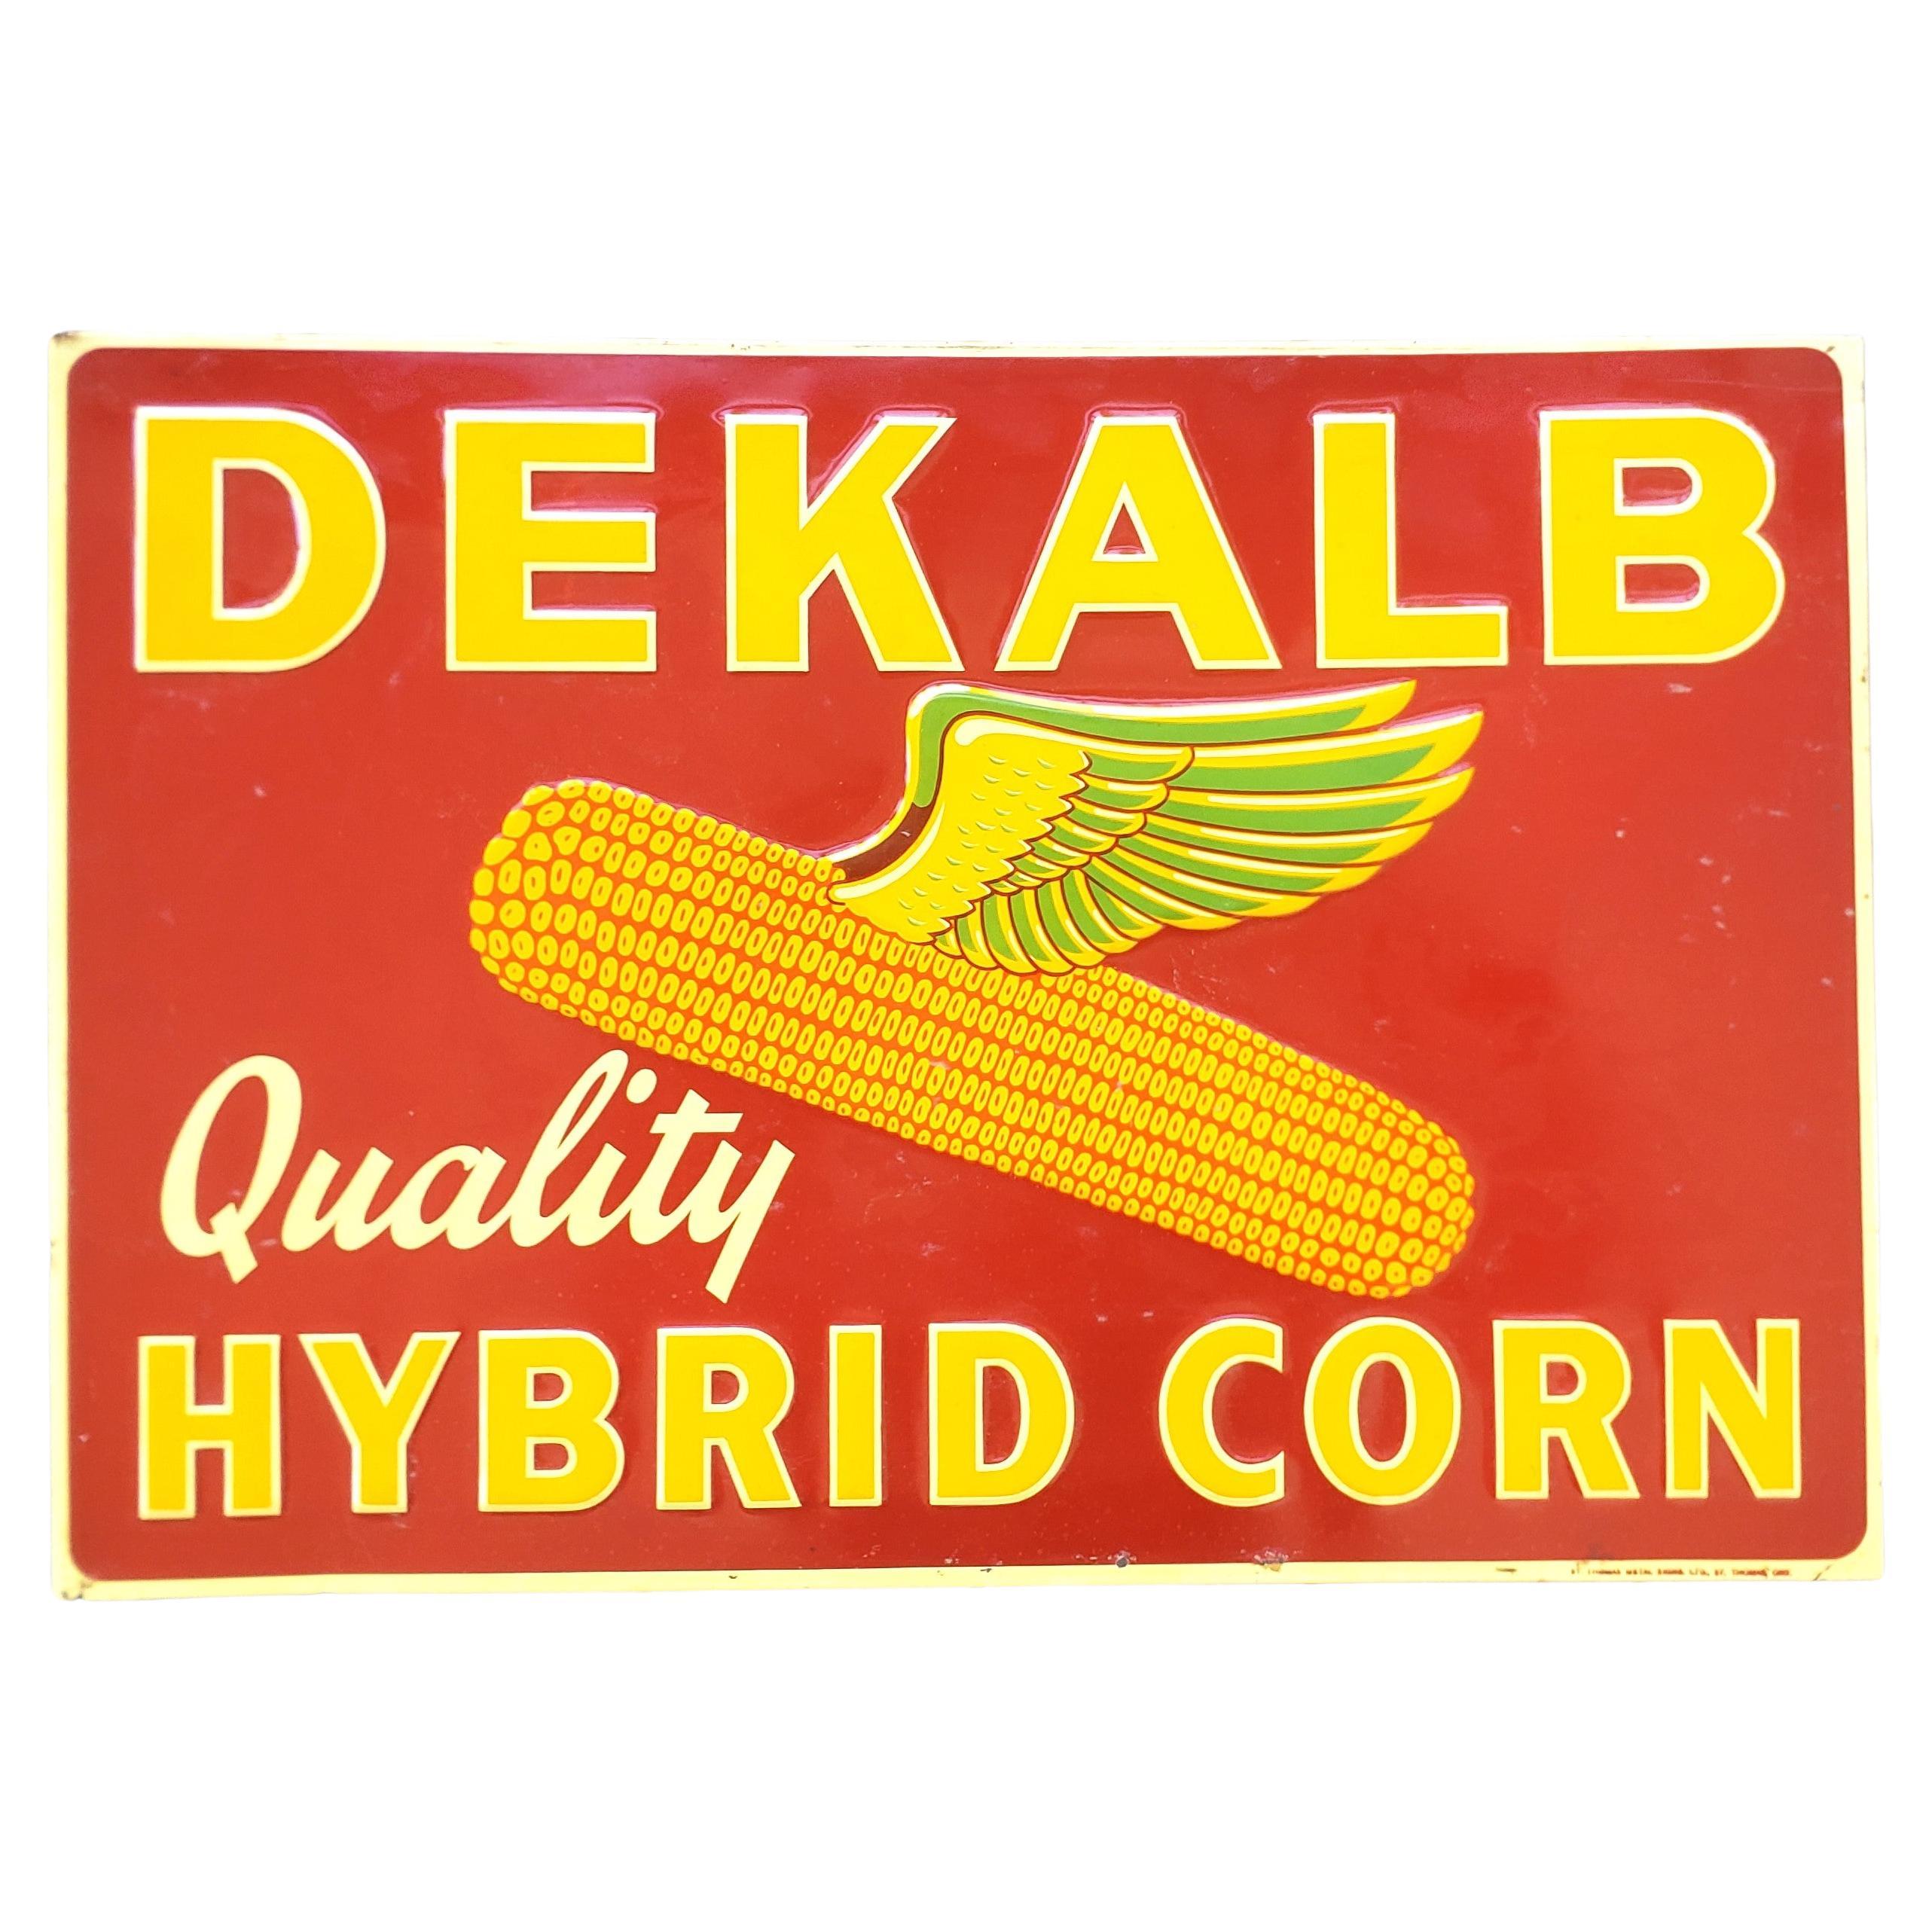 Enseigne publicitaire pour le maïs hybride de Dekalb en relief, datant du milieu du siècle, pour une ferme ou un commerce